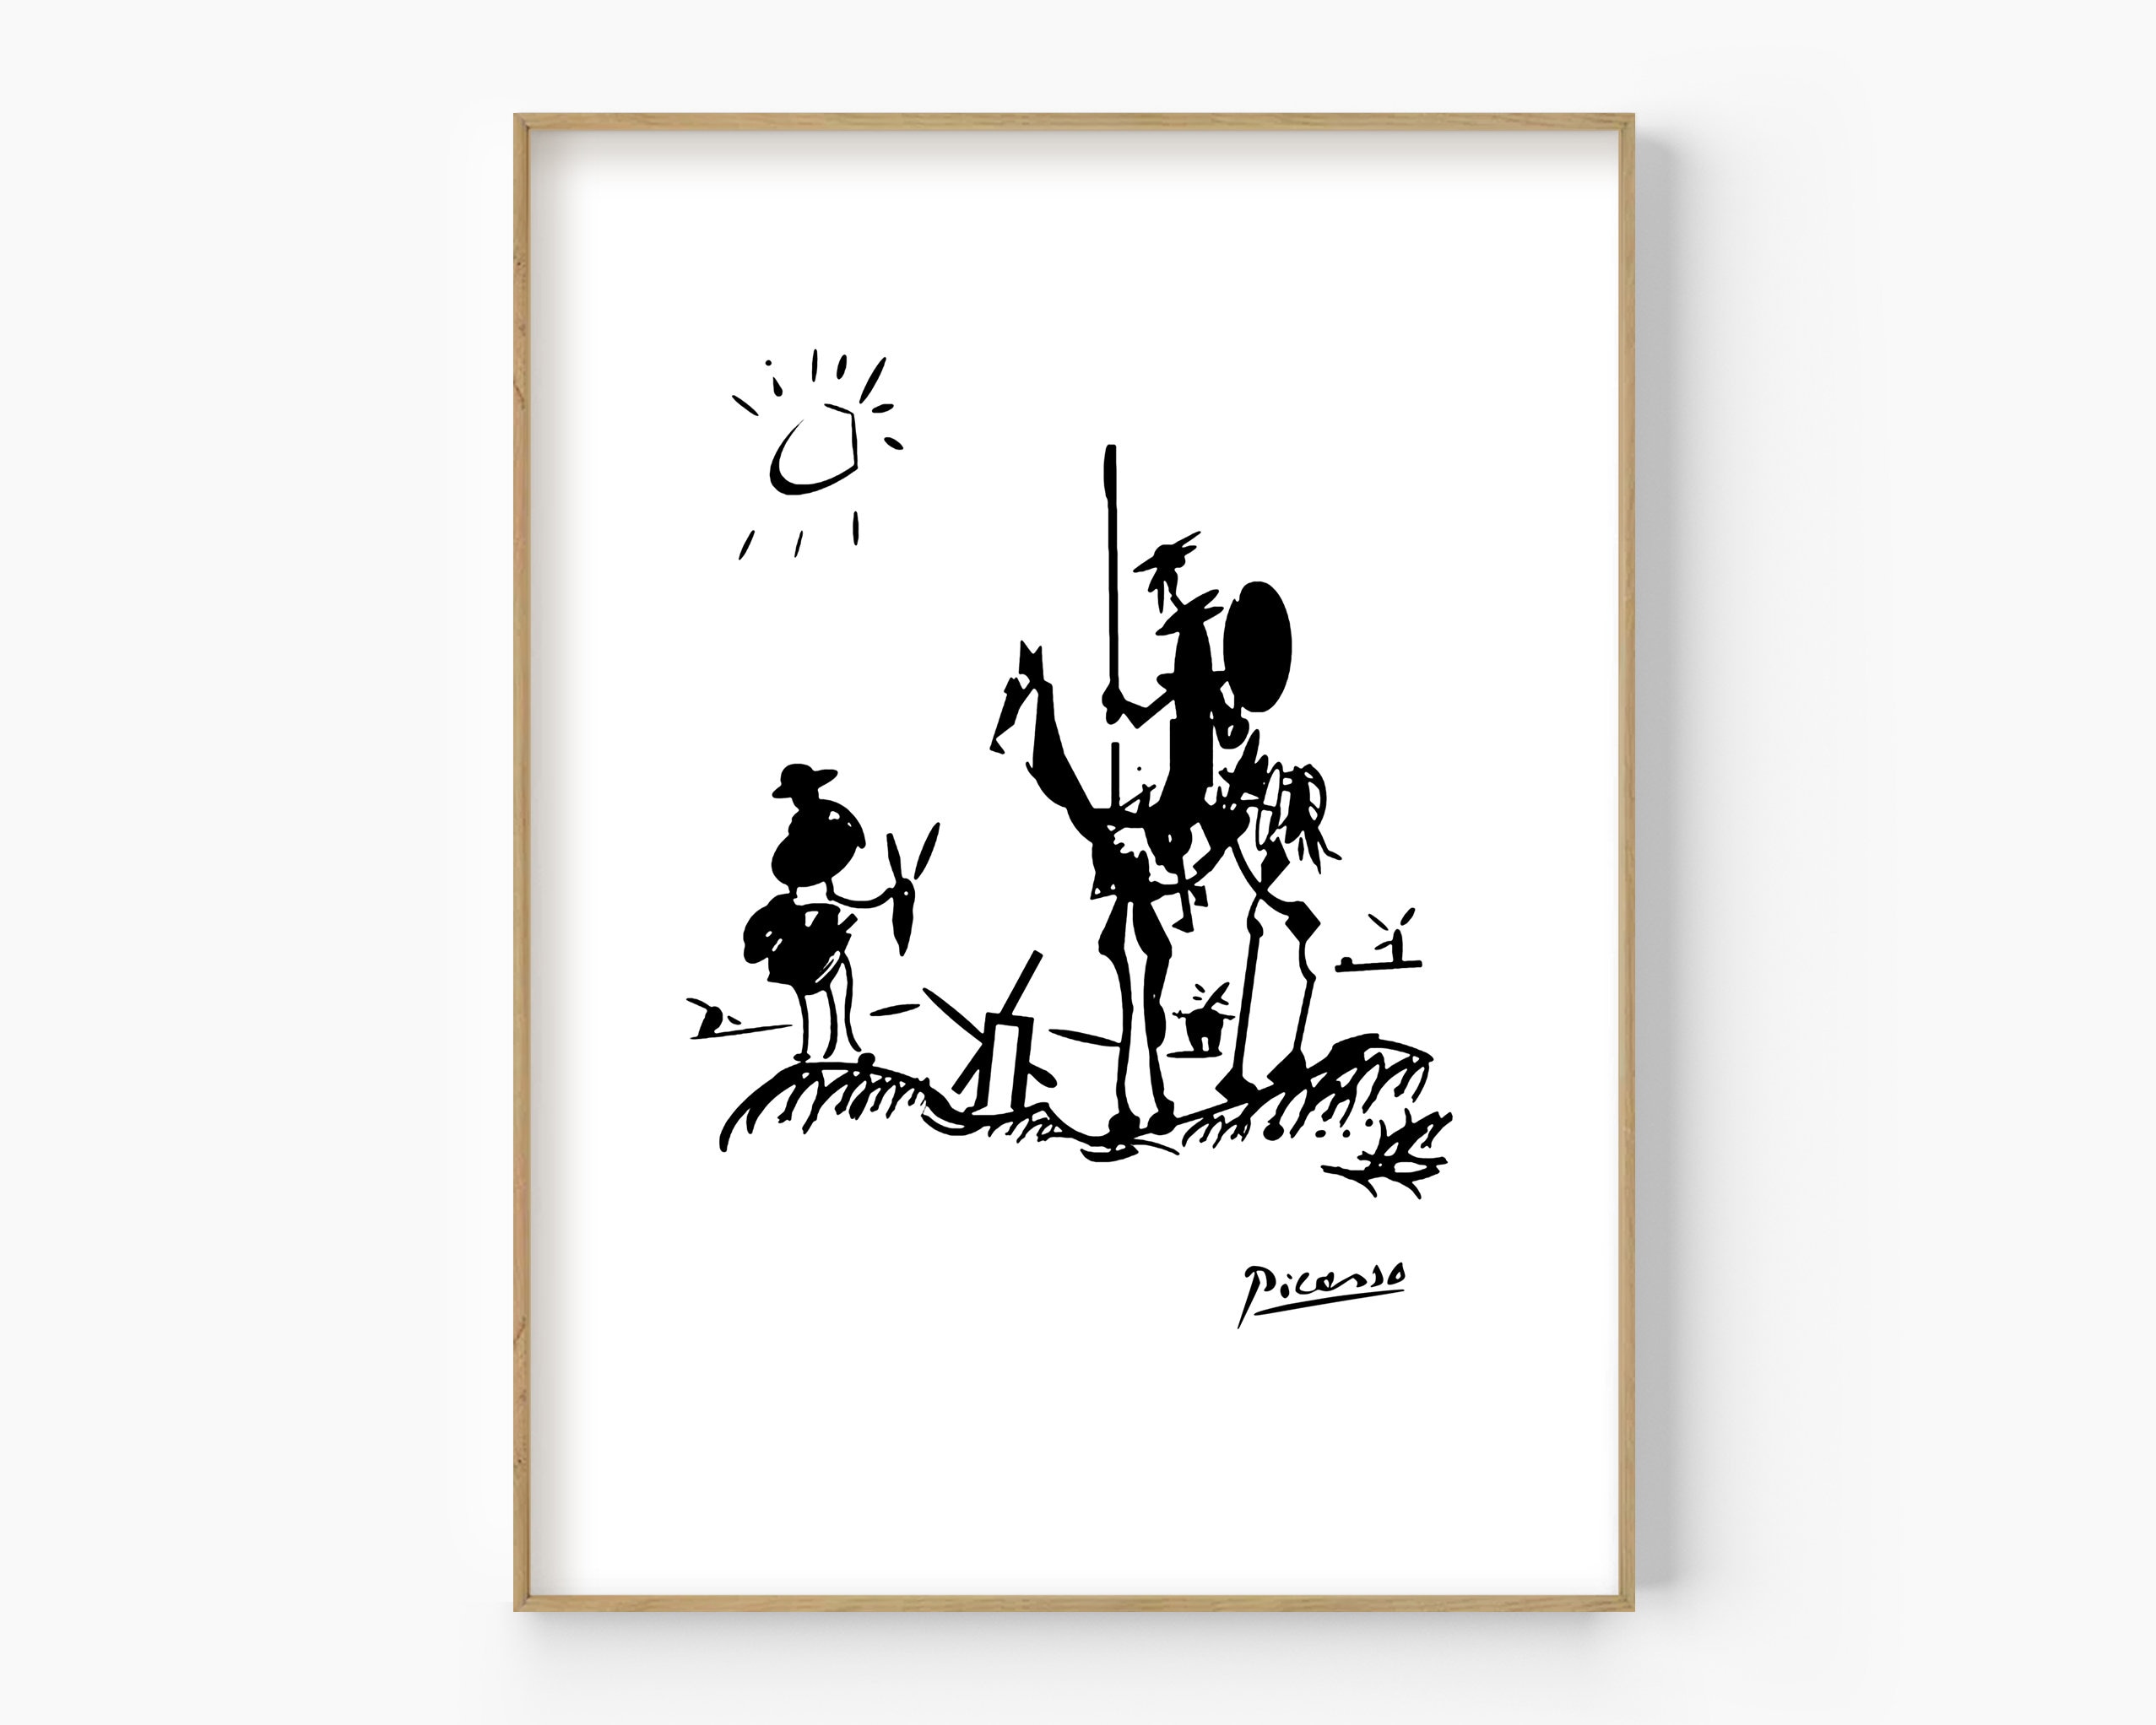 Quixote Etsy - Don Art